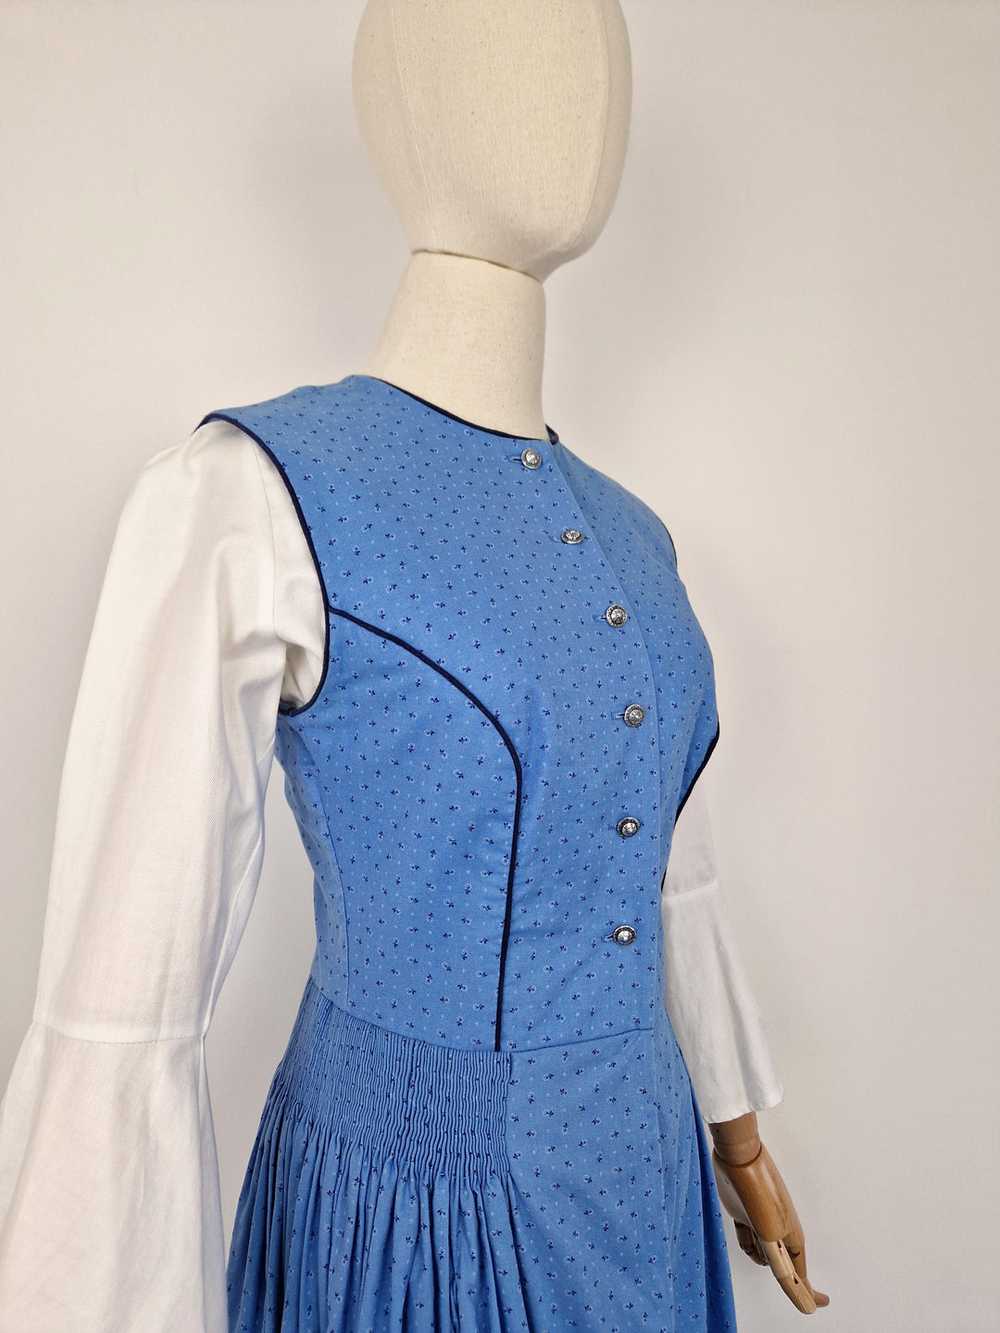 Vintage blue dirndl dress - image 4